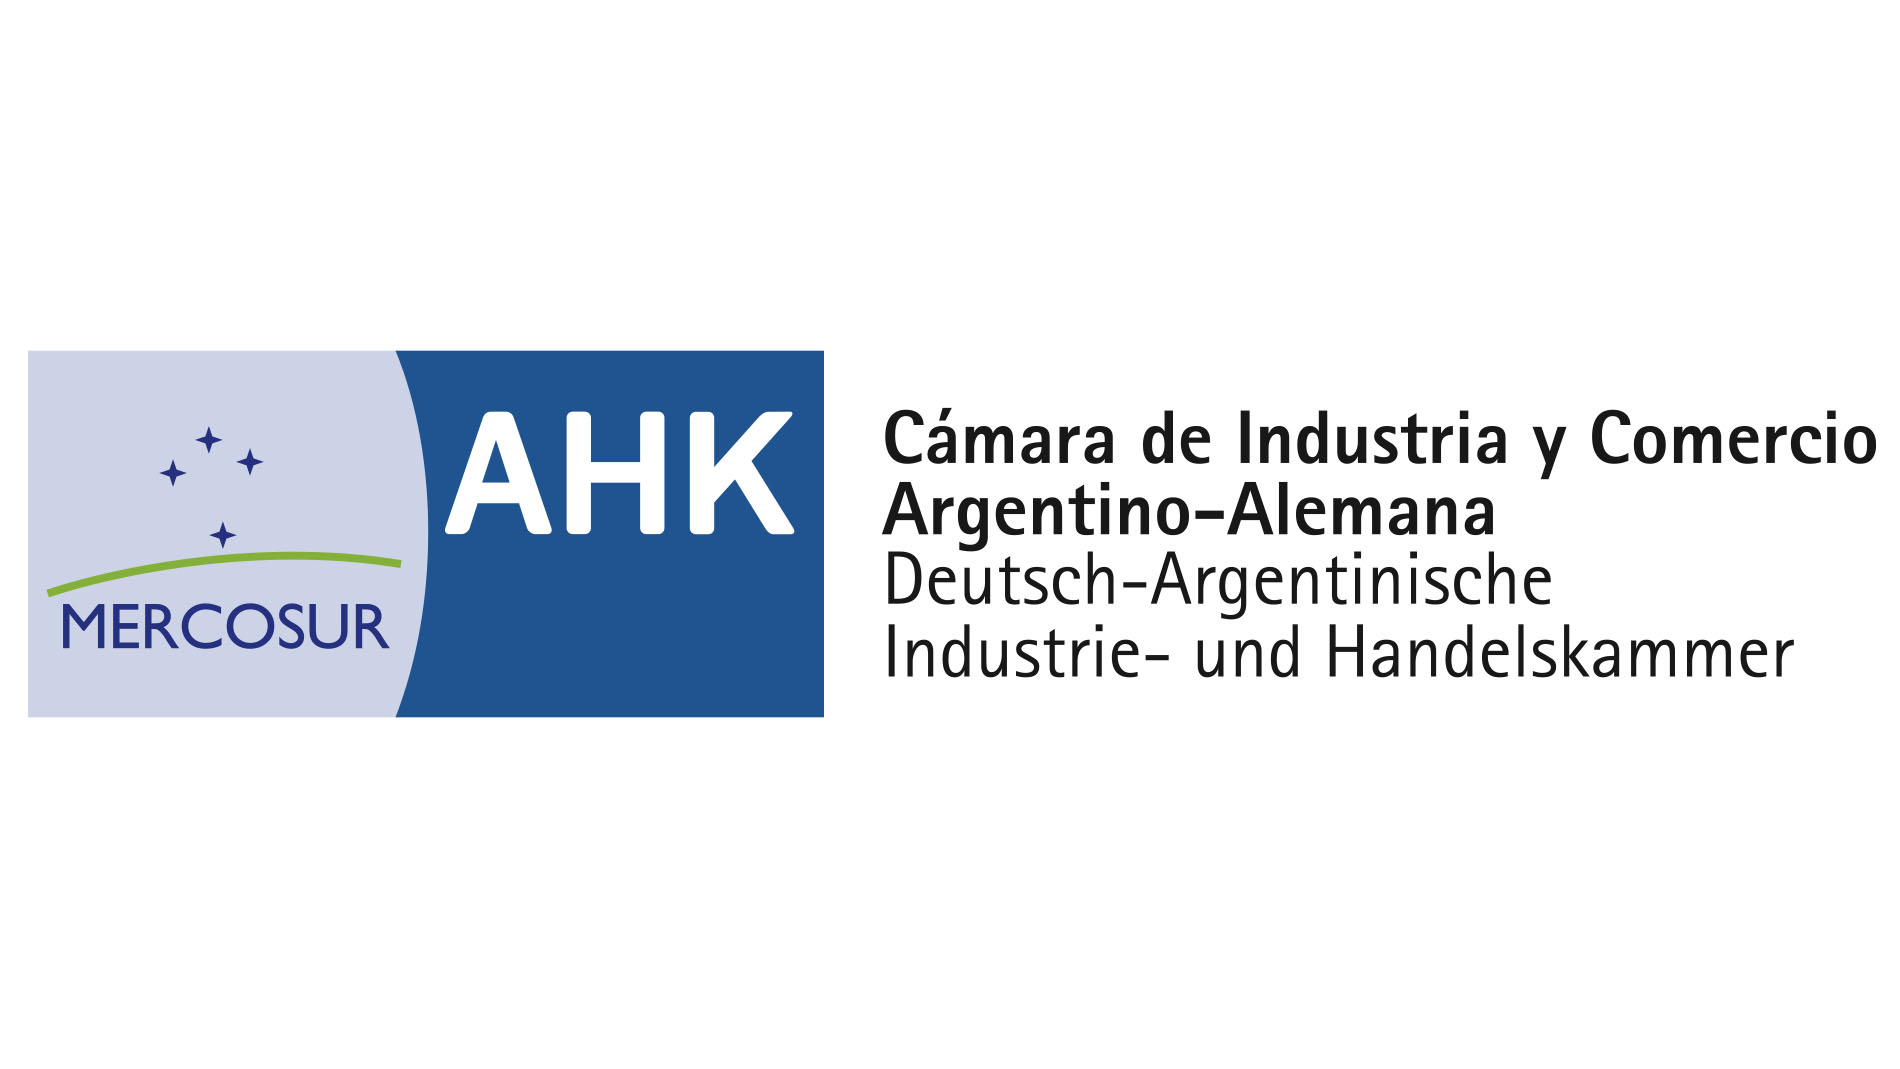 Cámara de Industria y Comercio Argentino-Alemana